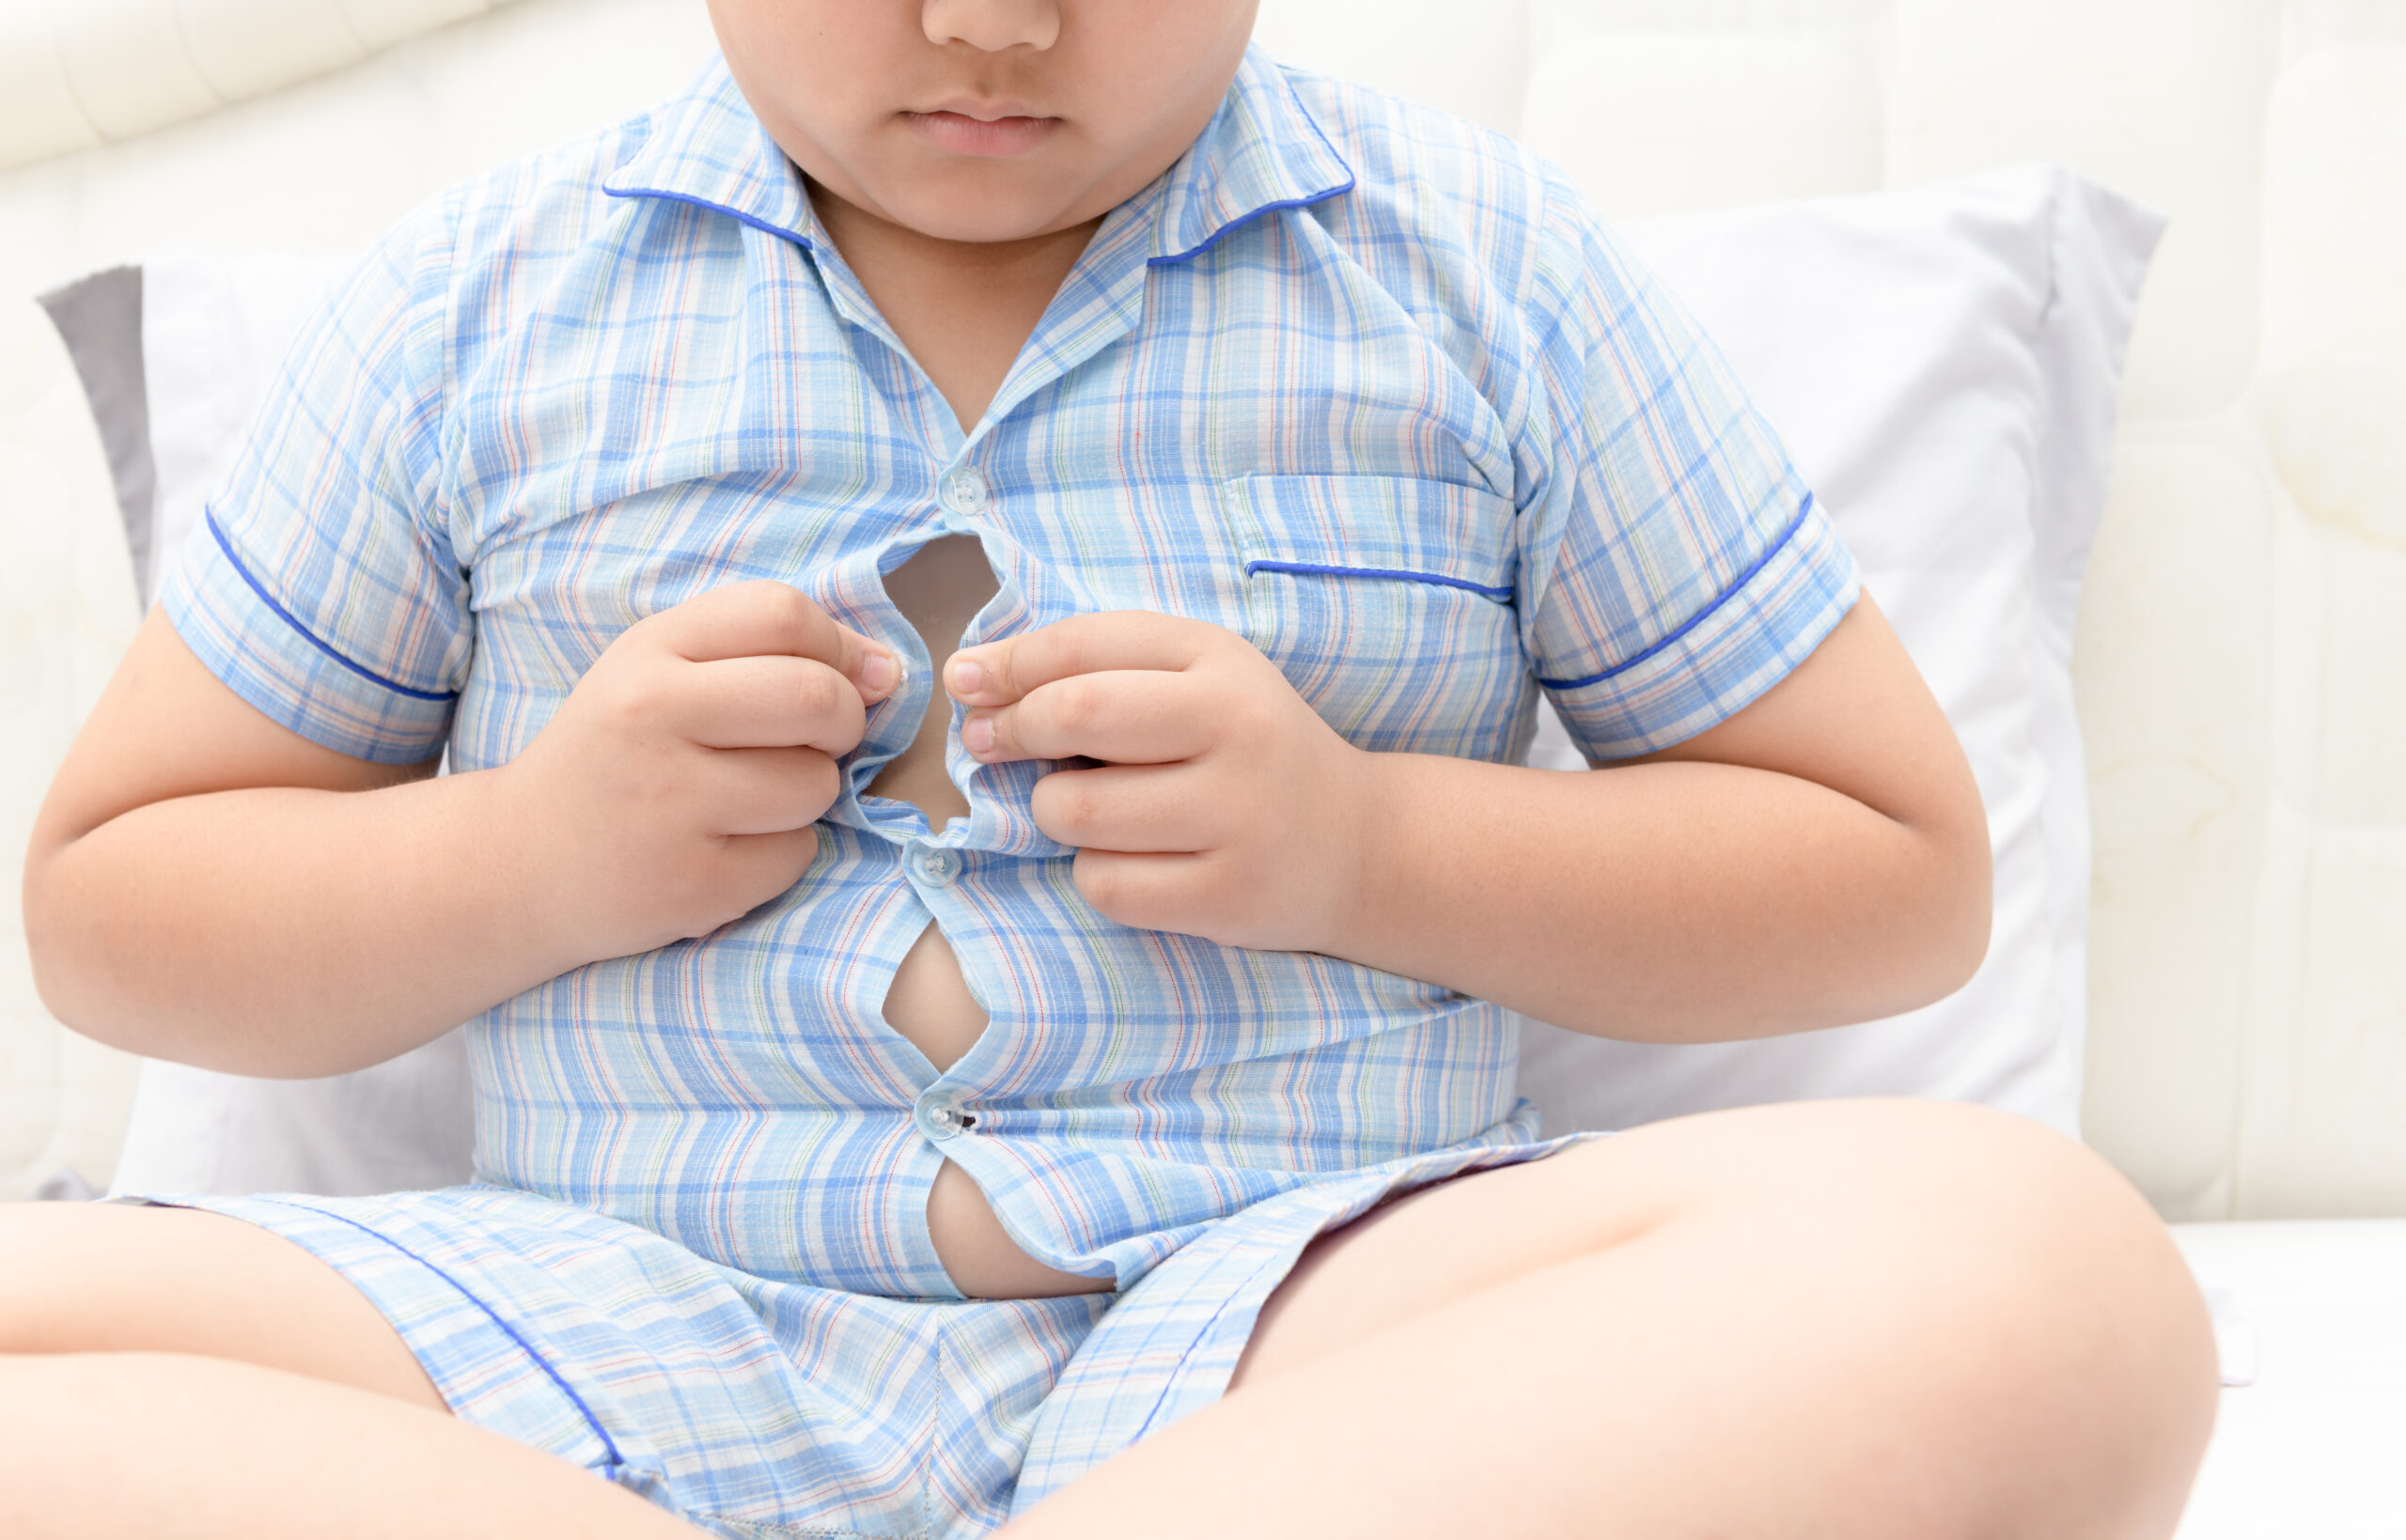 Obesidad y sobrepeso, causas del incremento de diabetes tipo 2 en pacientes pediátricos